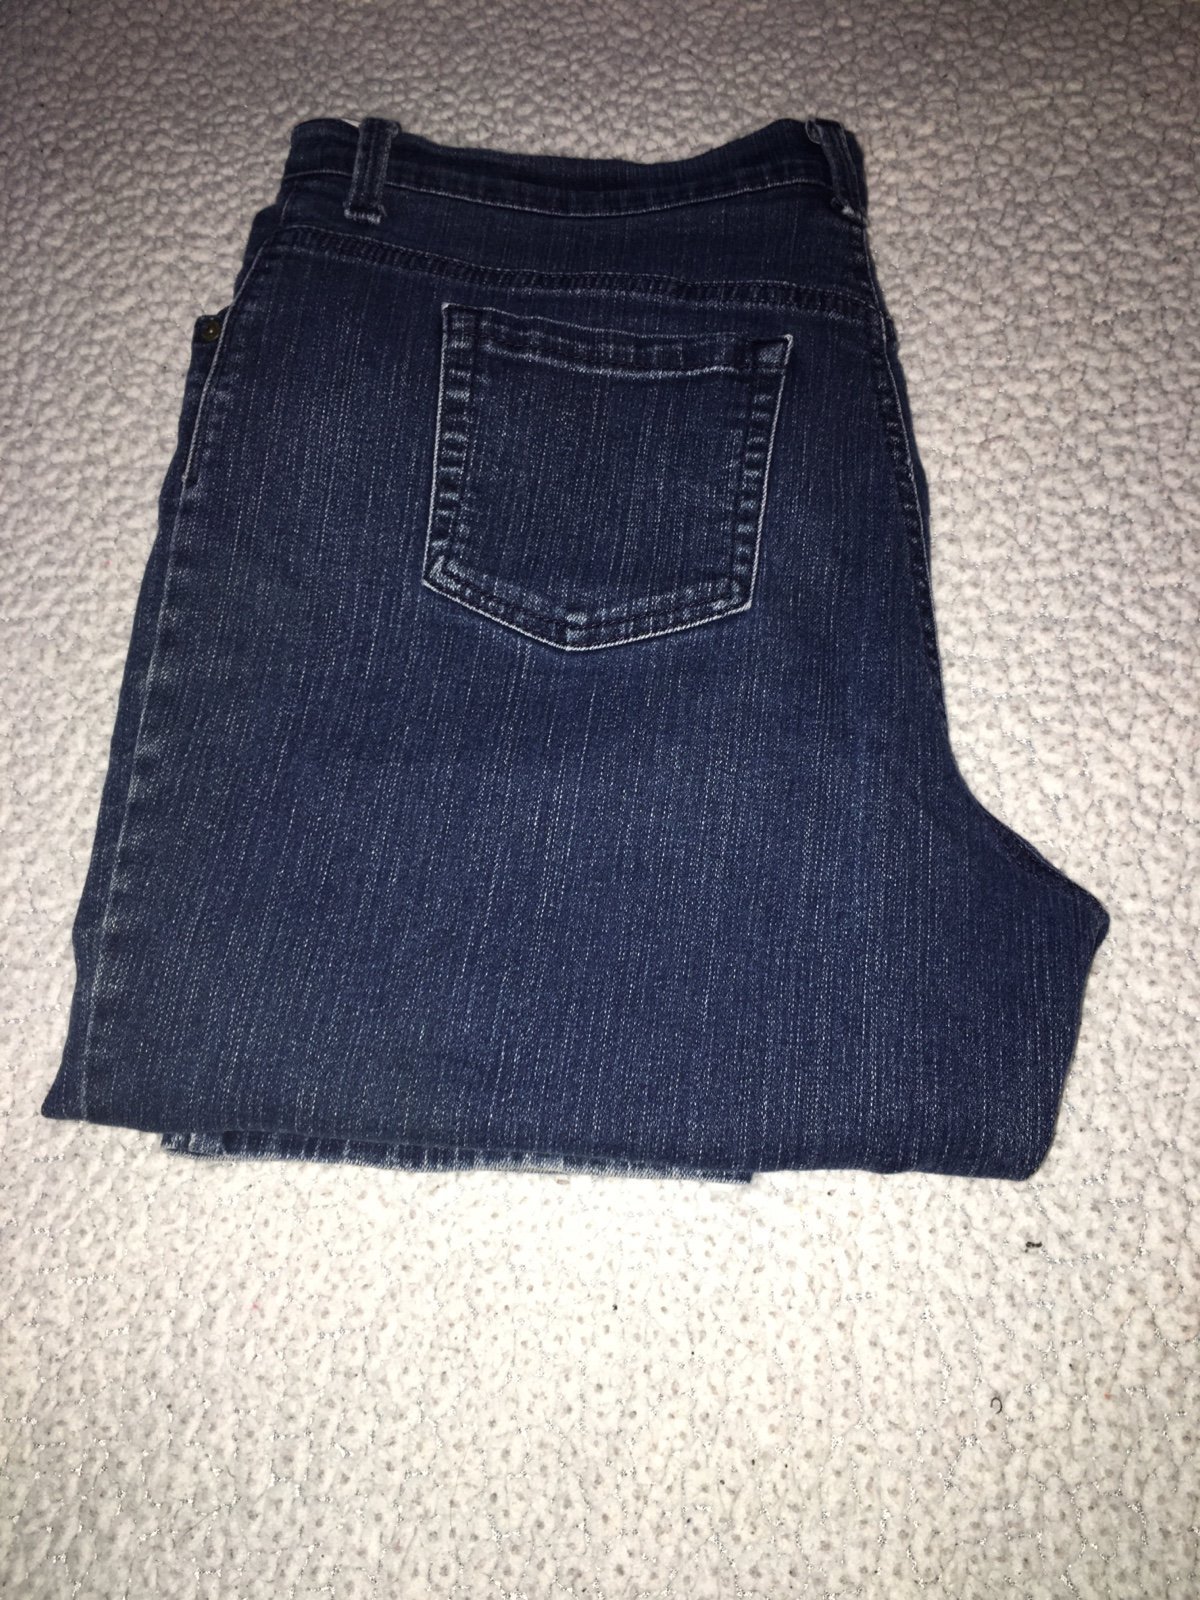 junior jeans size 16 g48ltJ6Qu